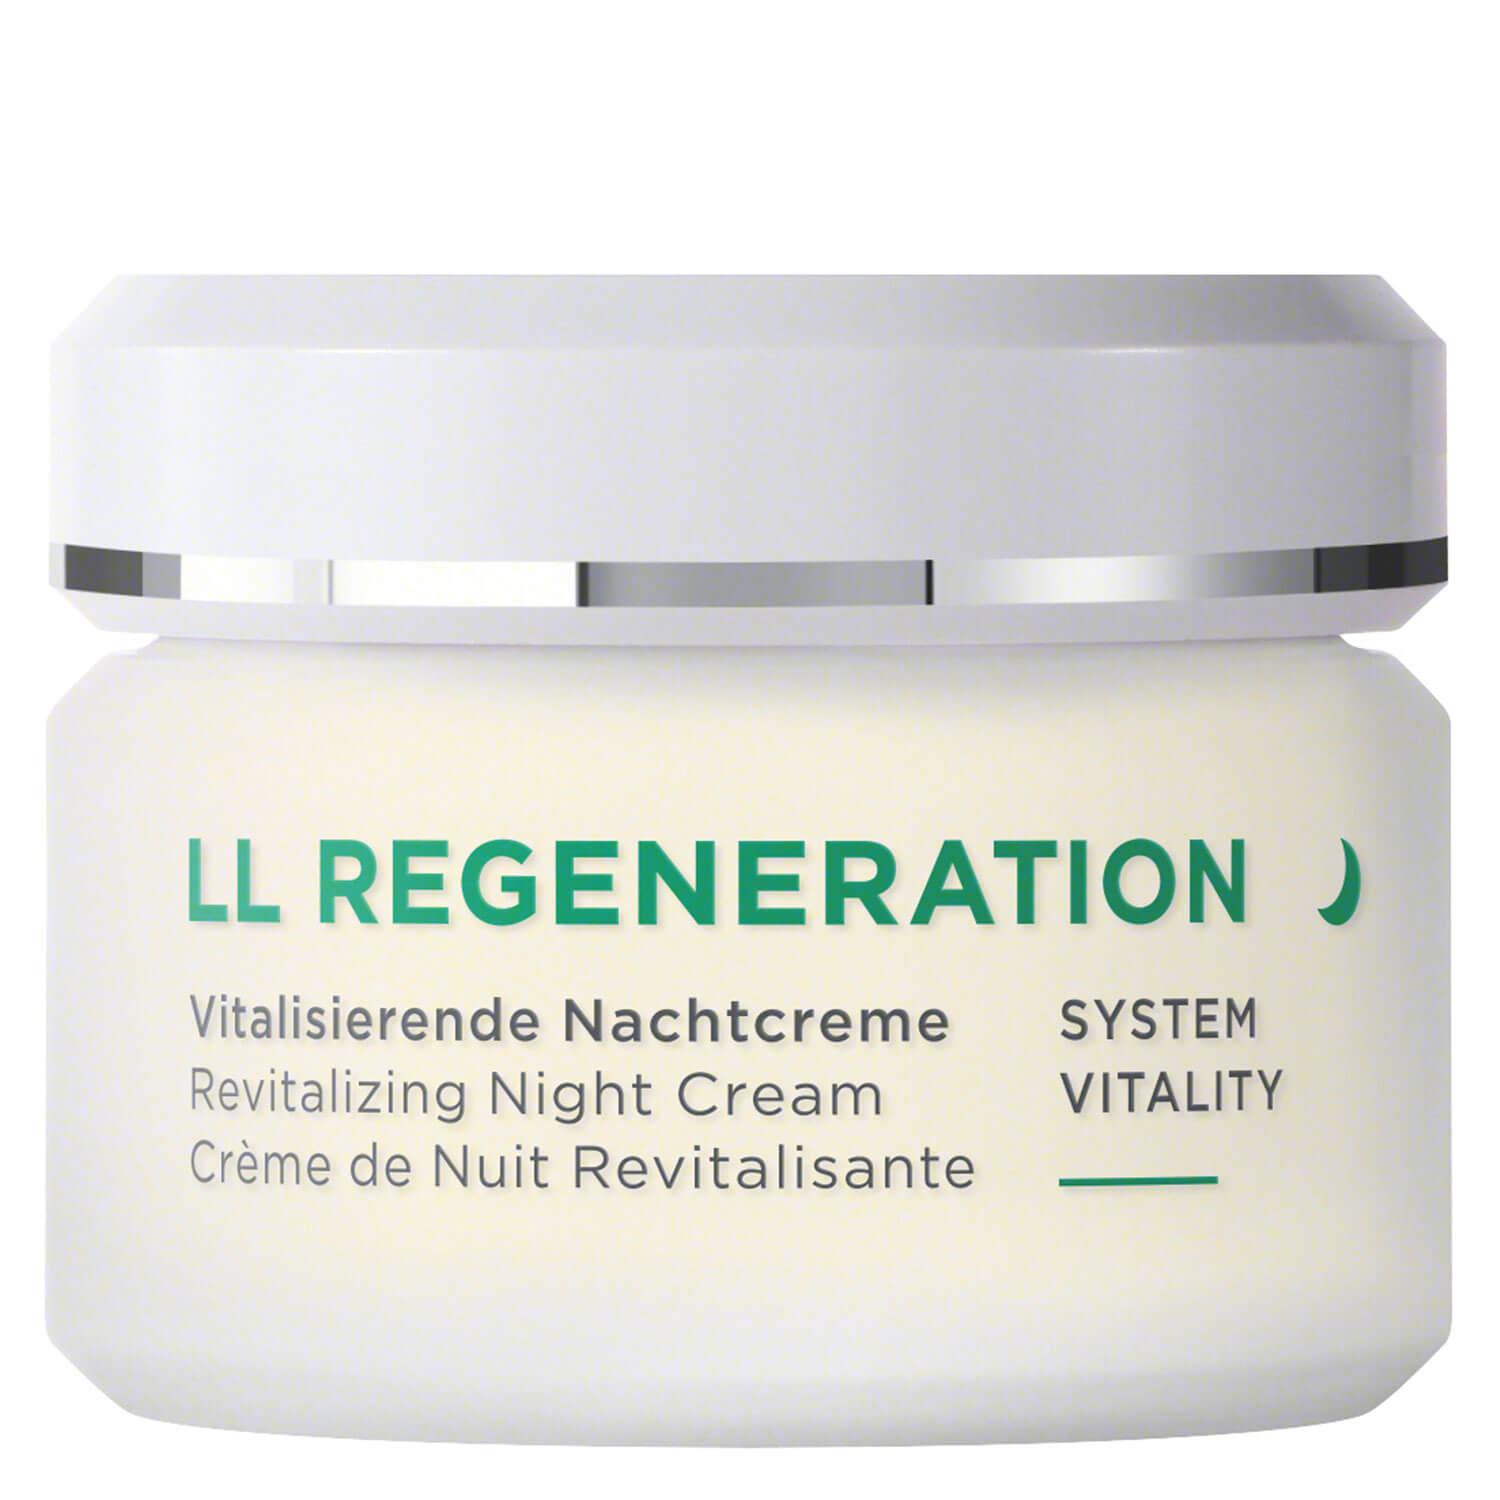 LL Regeneration - Revitalizing Night Cream